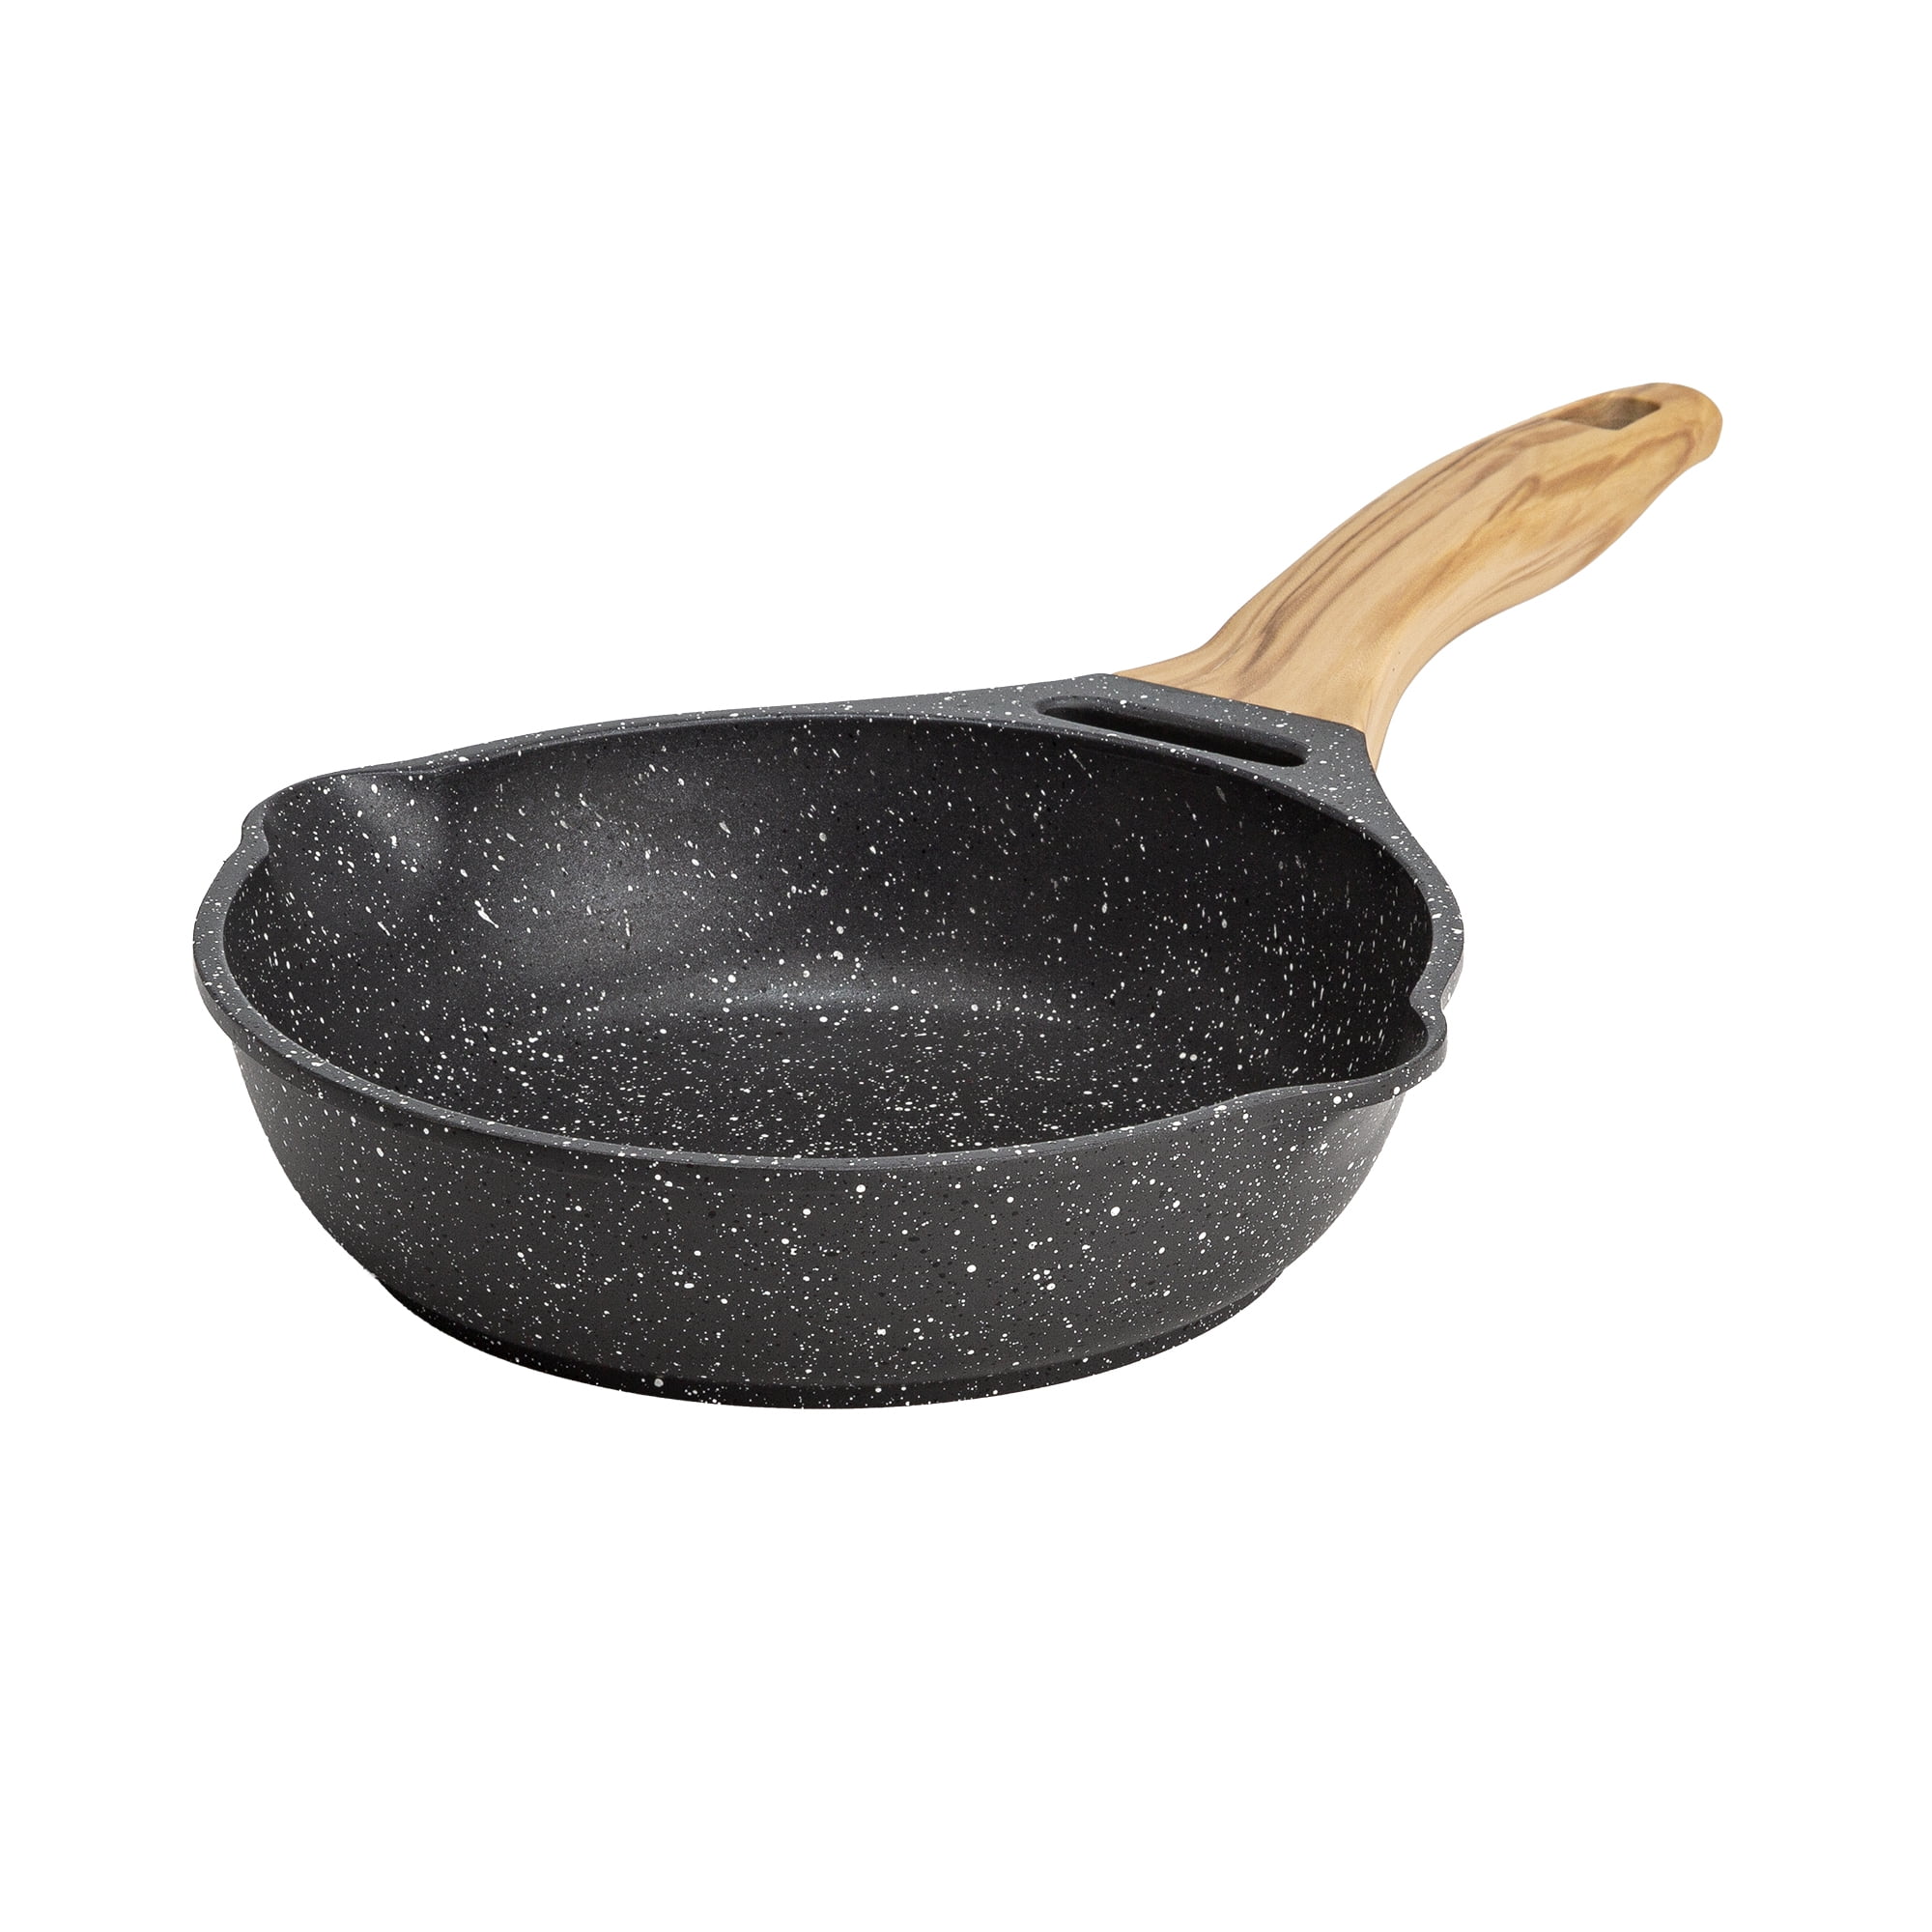 Chef Burke Quick Release Fry Pan, 8-inch Diameter